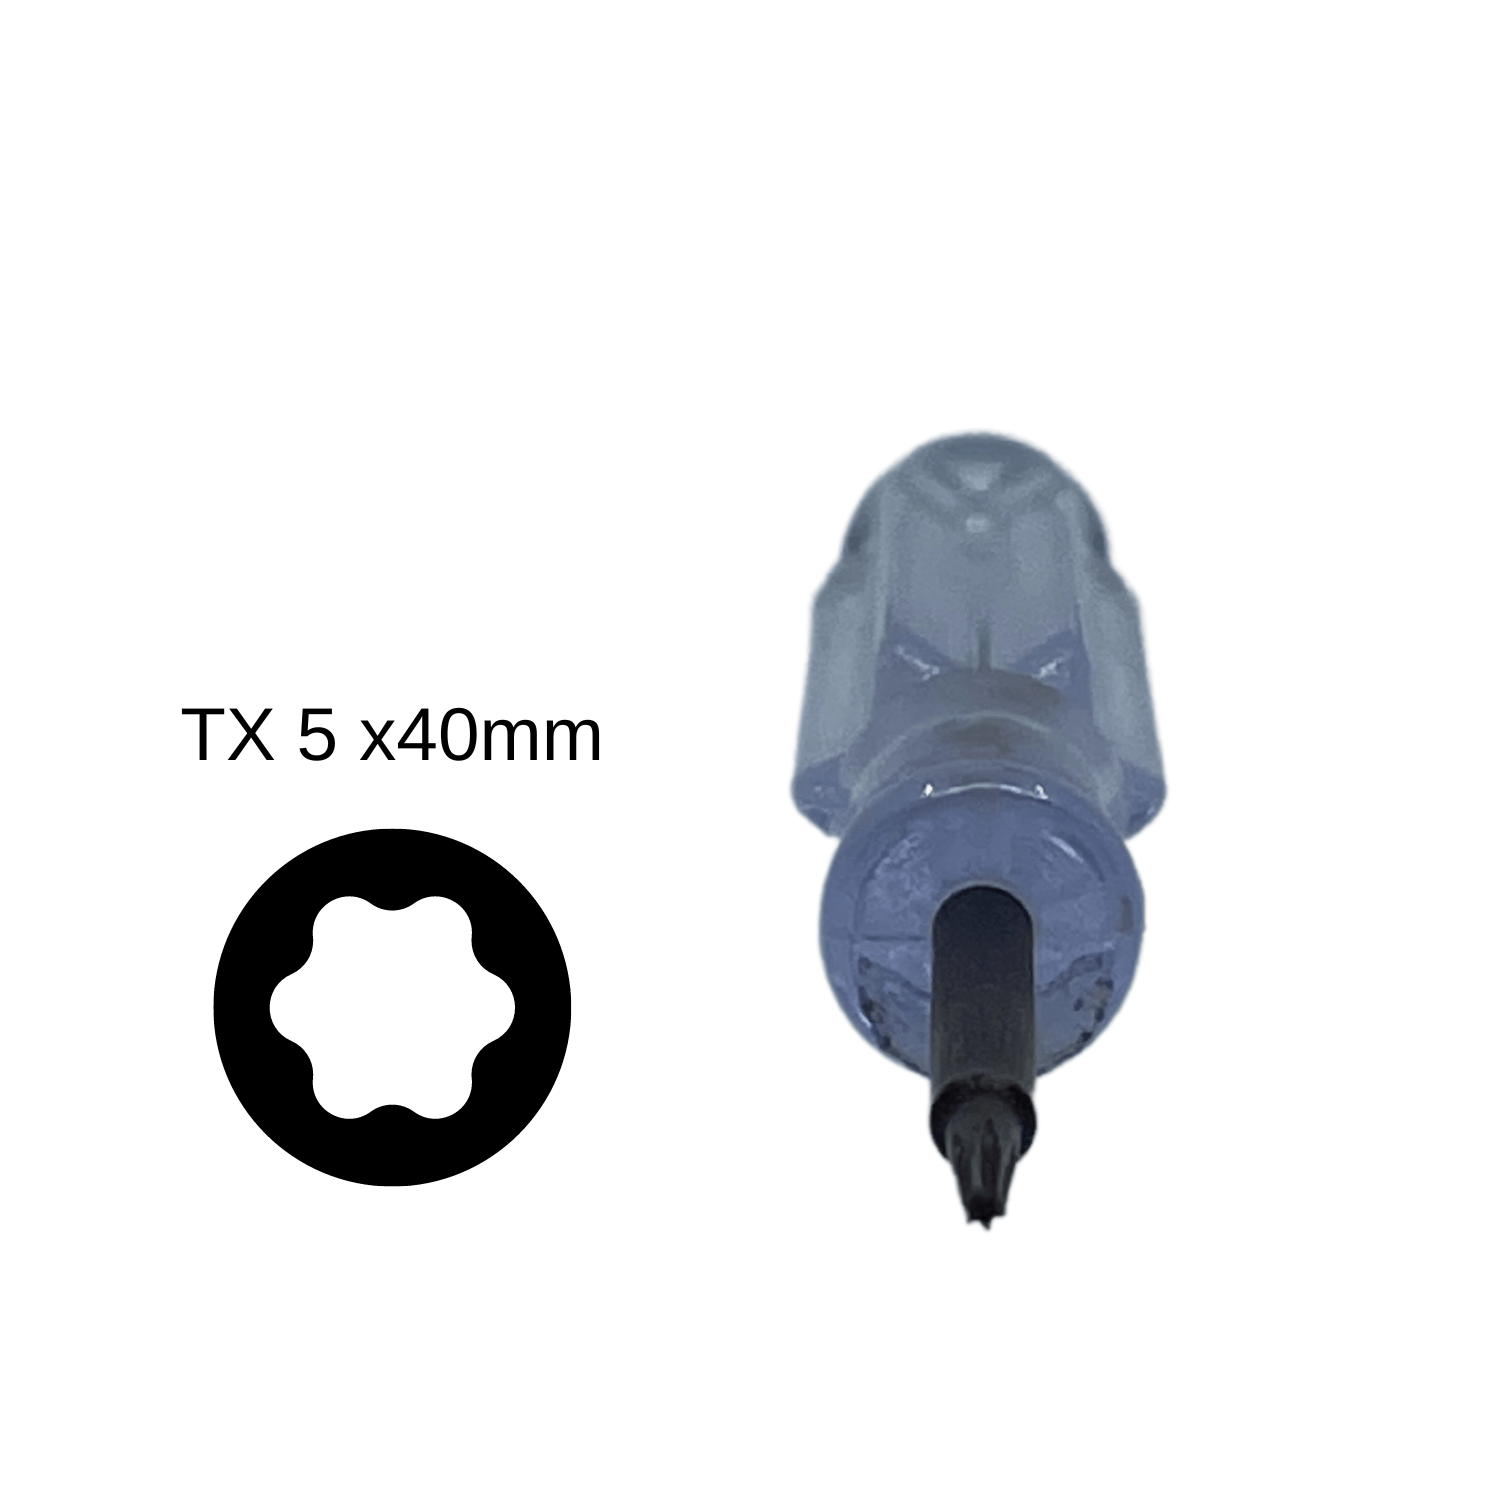 Kase Torx Screw Driver TX 5x40mm